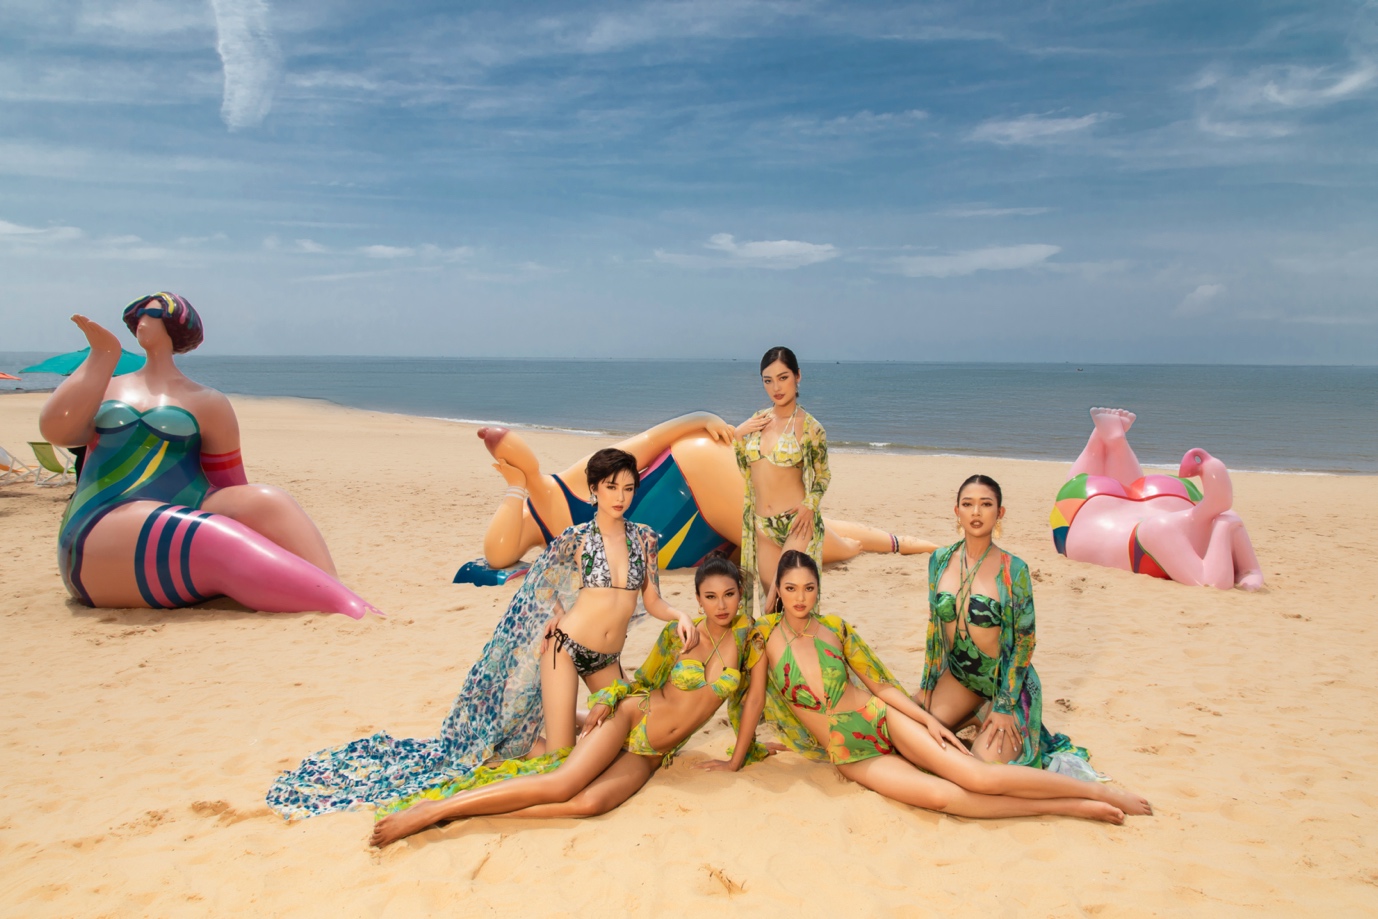 Bộ đôi Miss Earth tung ảnh siêu hot trong kỳ nghỉ dưỡng tại thành phố biển Phan Thiết - Ảnh 7.